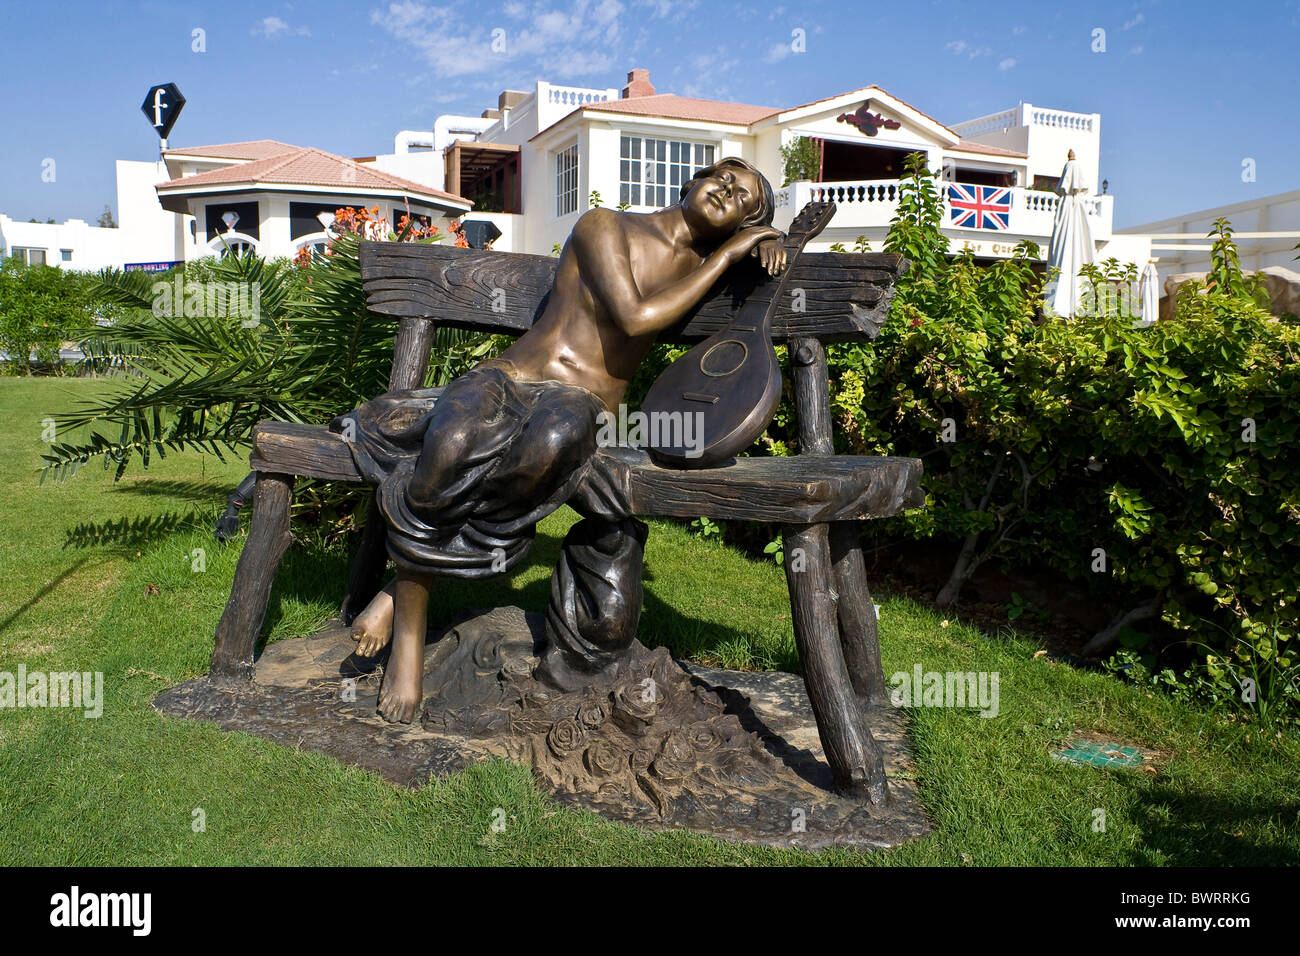 Bronze sculpture in a tourist resort, Sharm el Sheikh, Egypt, Africa Stock Photo